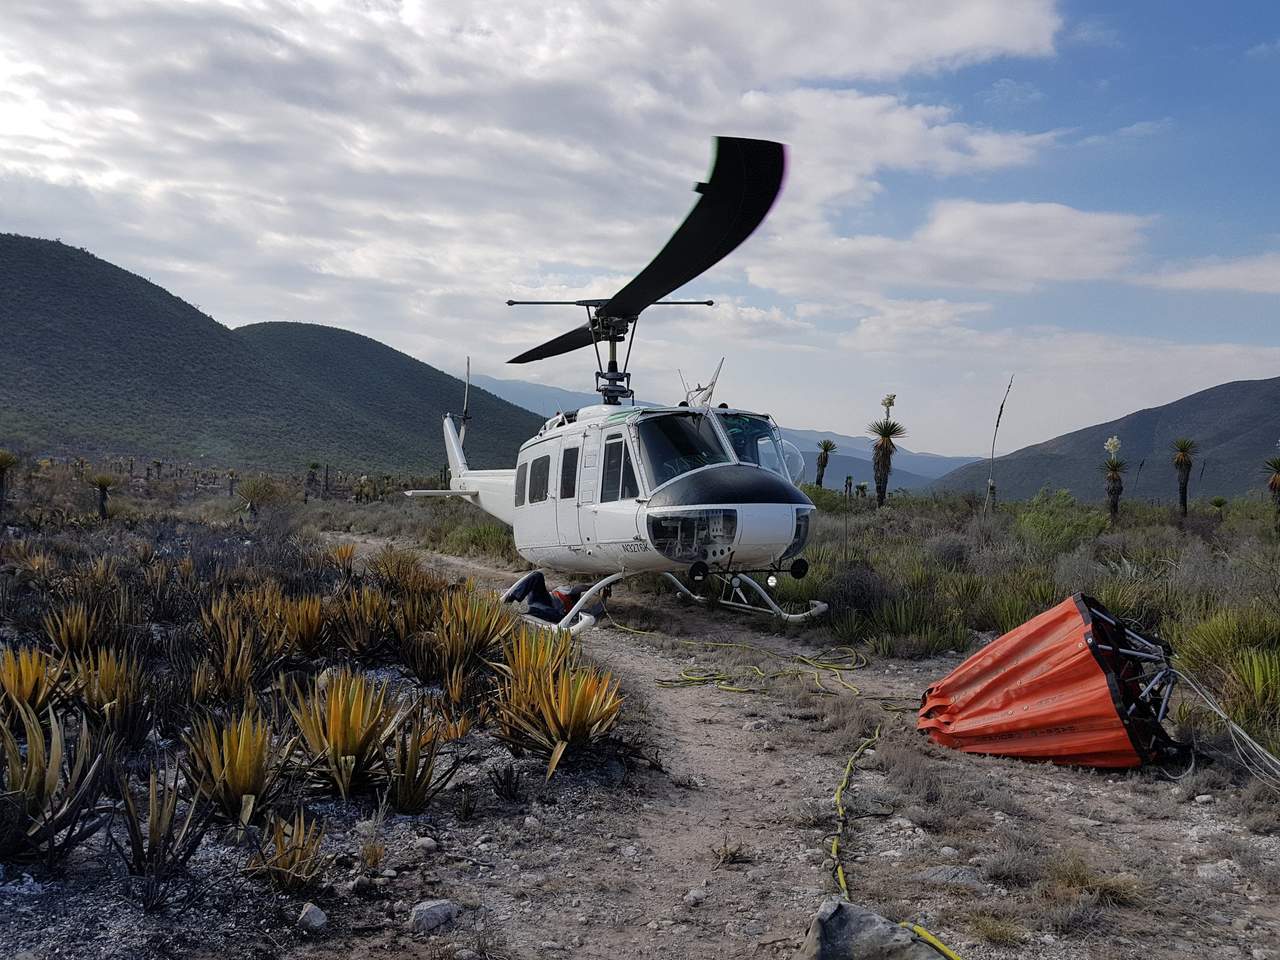  Un total de 613 hectáreas de matorral bajo fueron siniestradas por dos incendios forestales, iniciados desde el lunes pasado en el municipio de Aramberri, al sur de Nuevo León, informó la gerencia estatal de la Comisión Nacional Forestal (Conafor). (TWITTER)